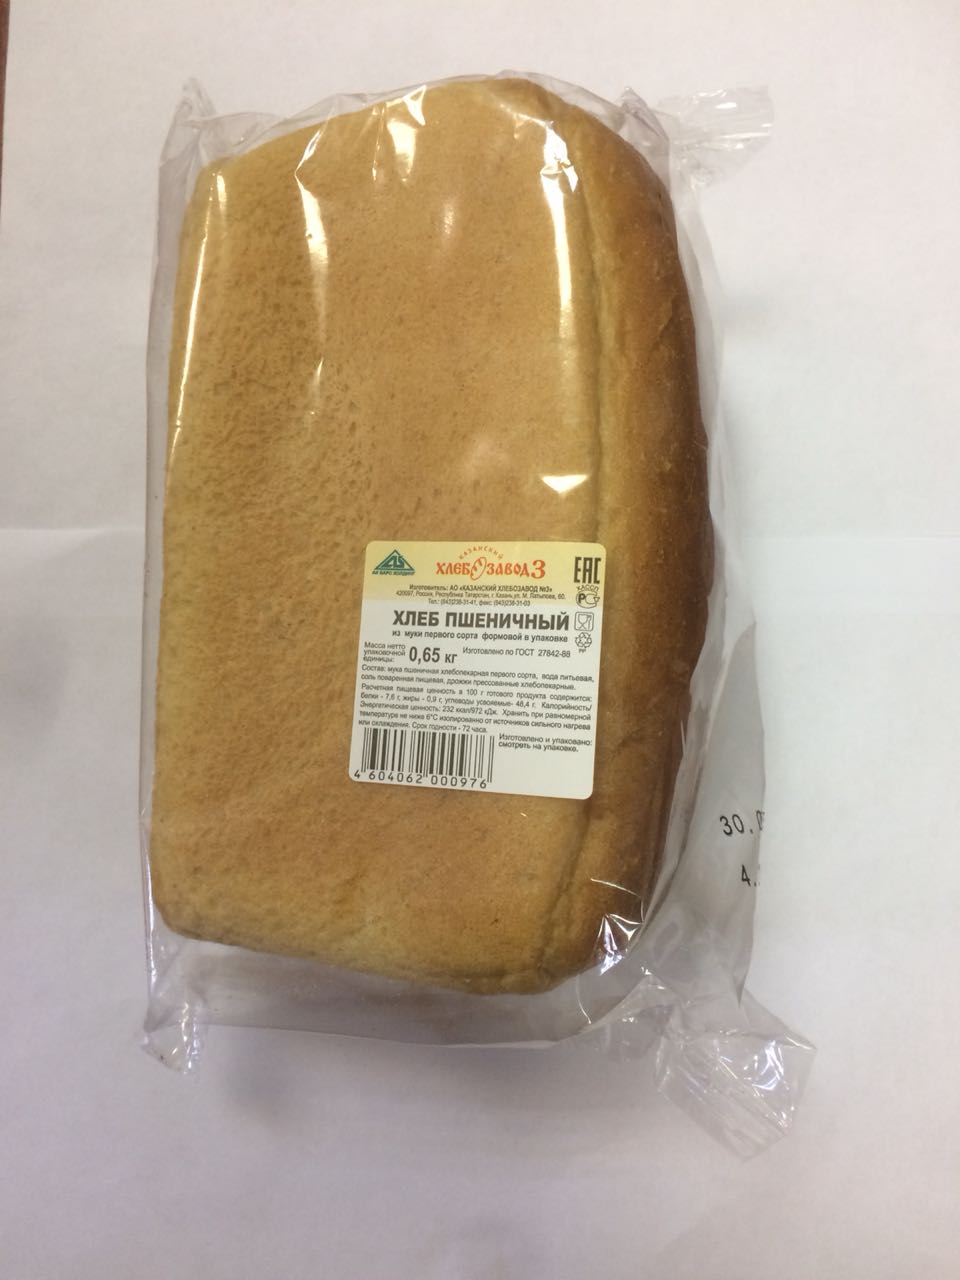 Результаты потребительской дегустации хлеба и хлебобулочных изделий, проведенной Госалкогольинспекцией РТ 12.07.2018 